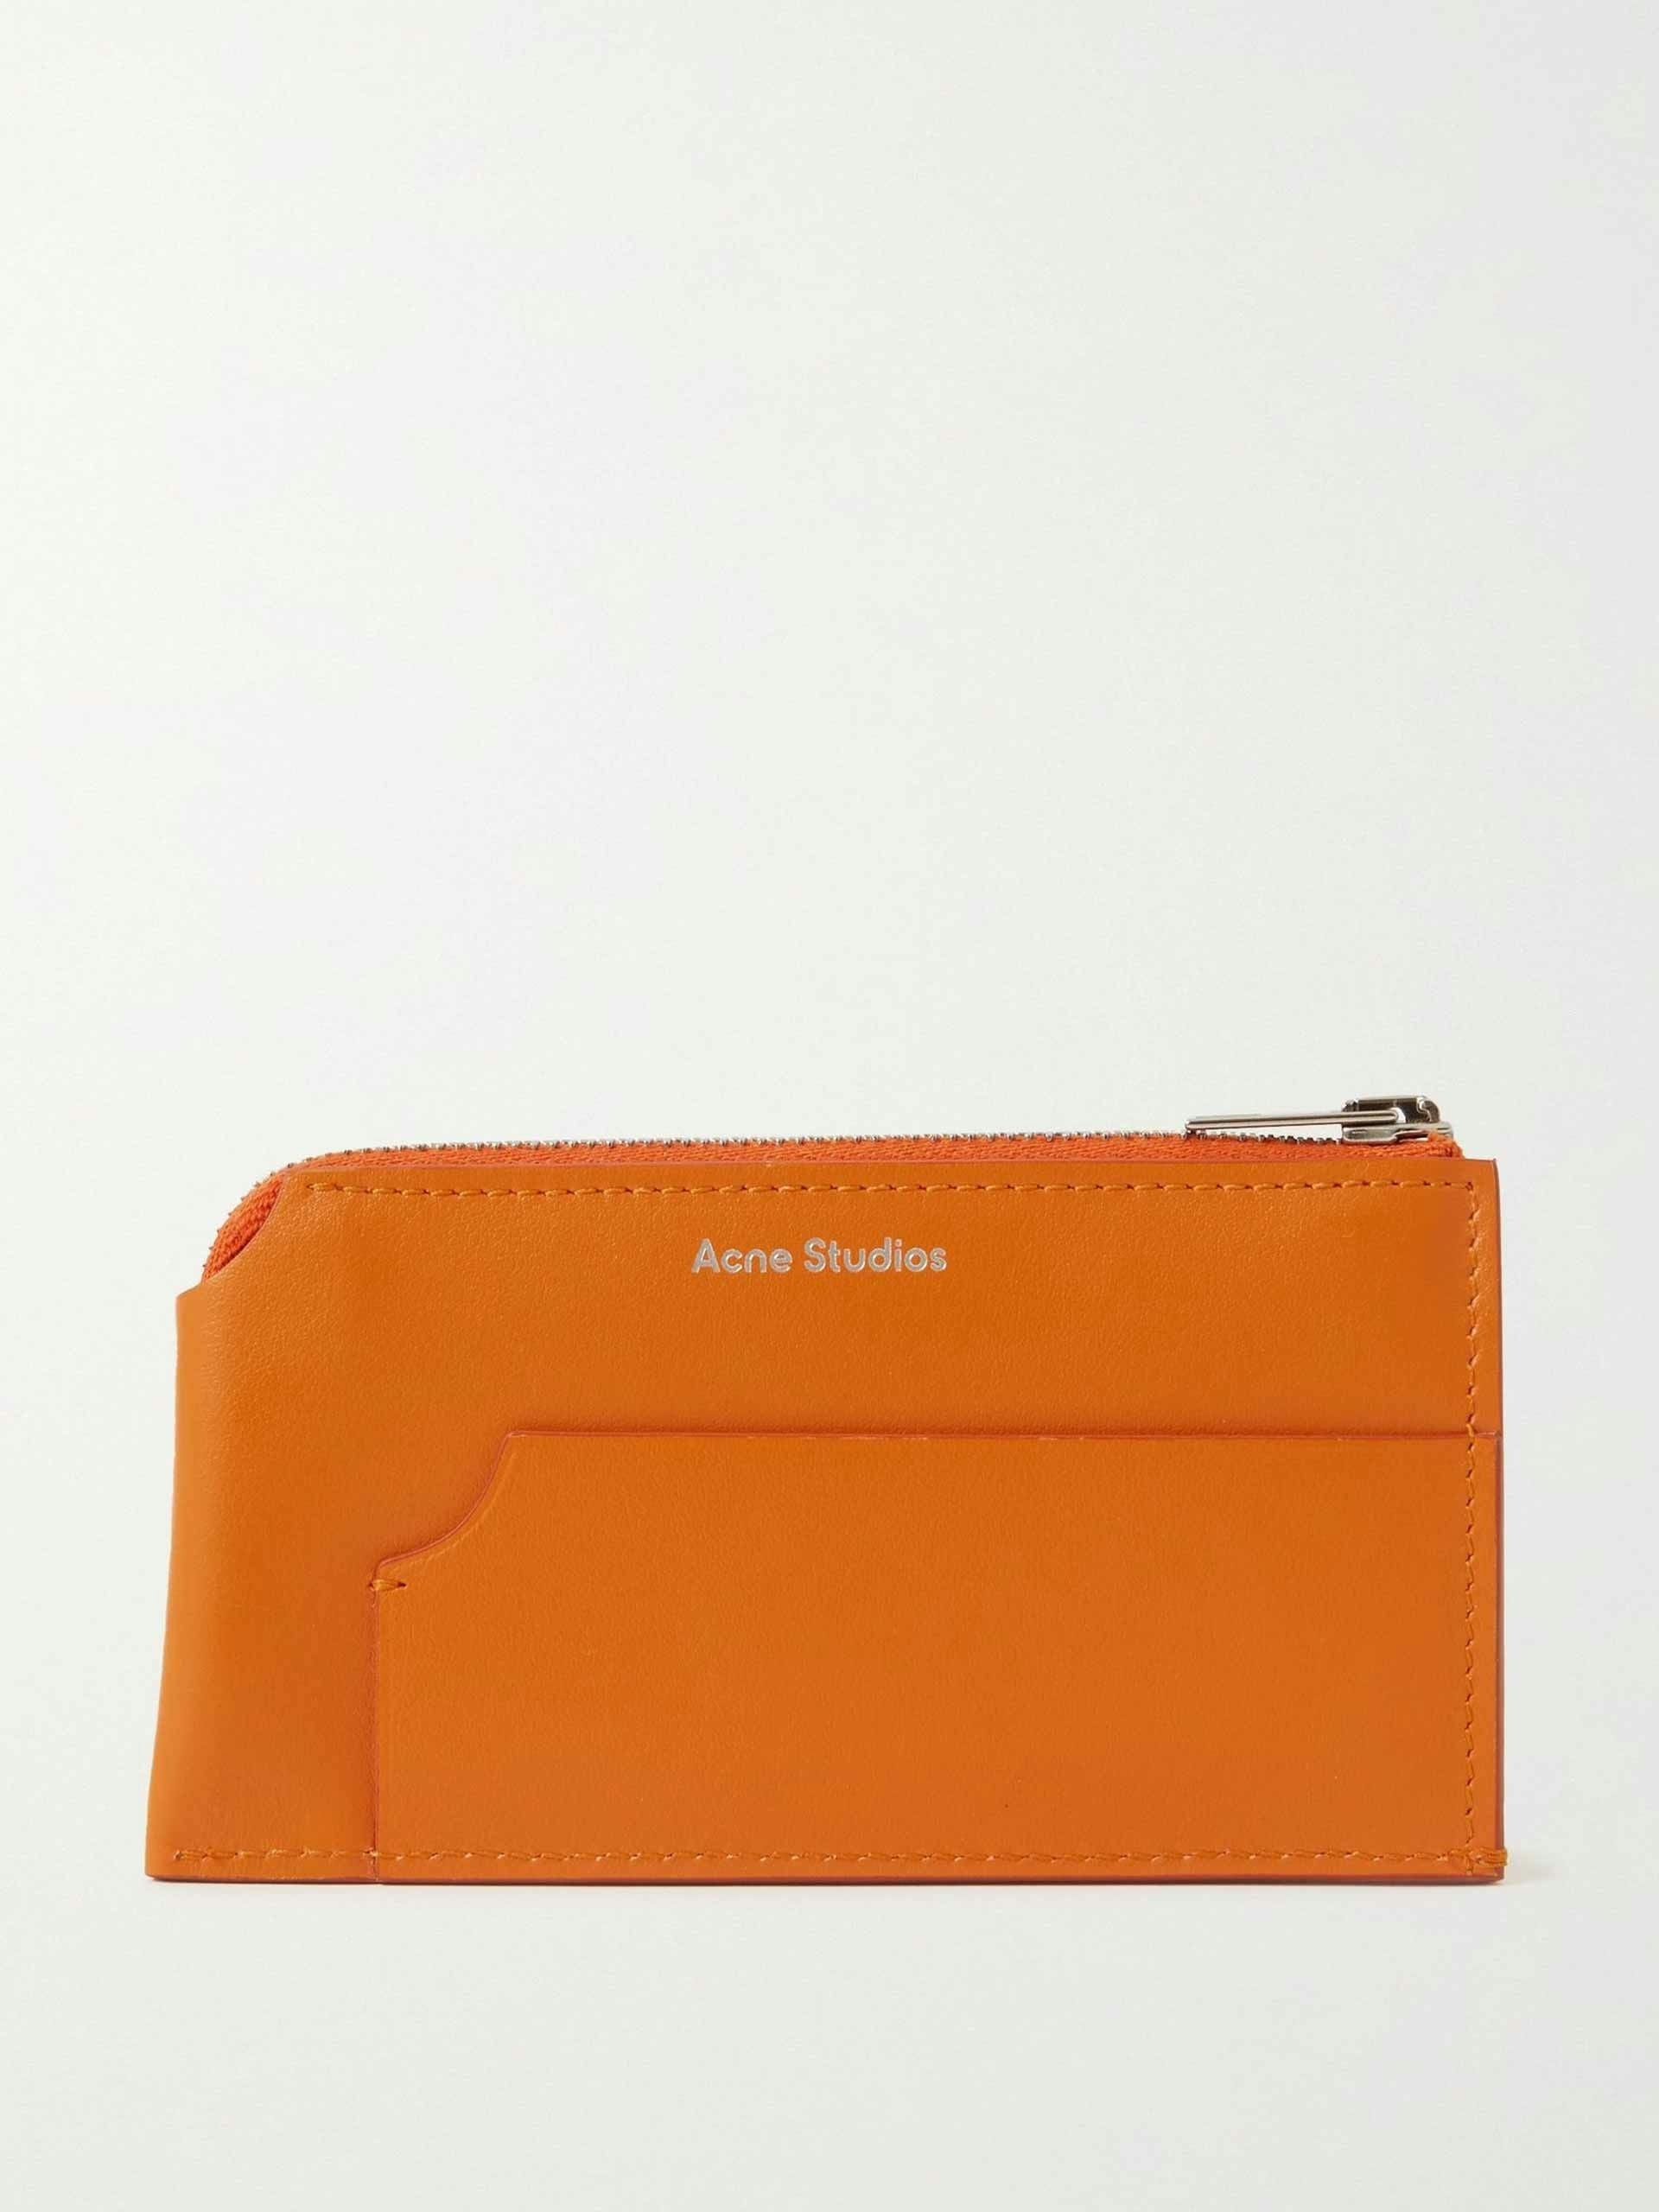 Orange leather zip-around wallet